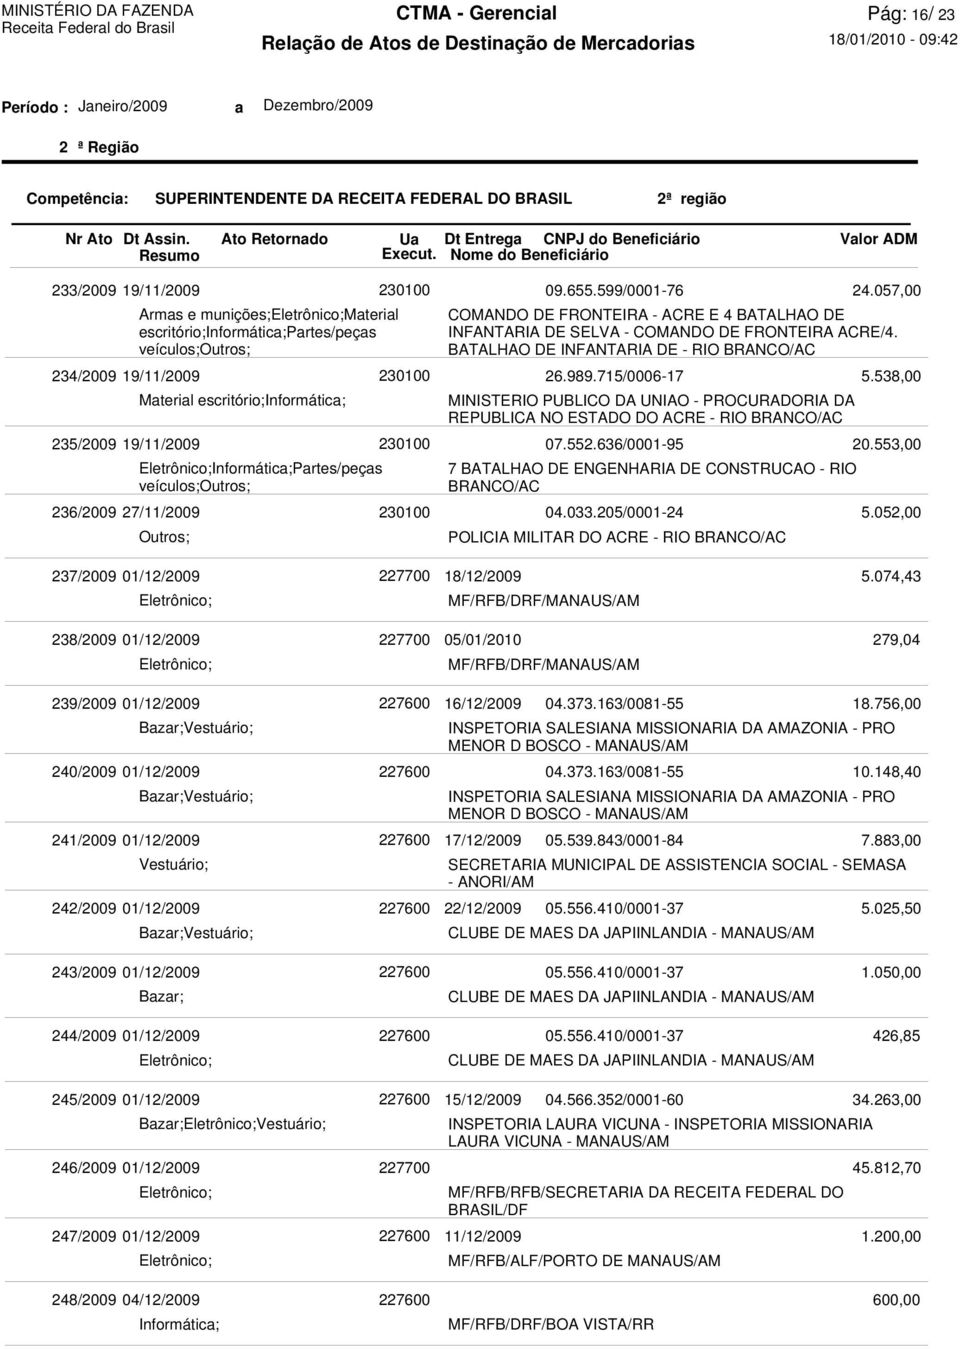 715/0006-17 MINISTERIO PUBLICO DA UNIAO - PROCURADORIA DA REPUBLICA NO ESTADO DO ACRE - RIO BRANCO/AC 07.552.636/0001-95 7 BATALHAO DE ENGENHARIA DE CONSTRUCAO - RIO BRANCO/AC 04.033.